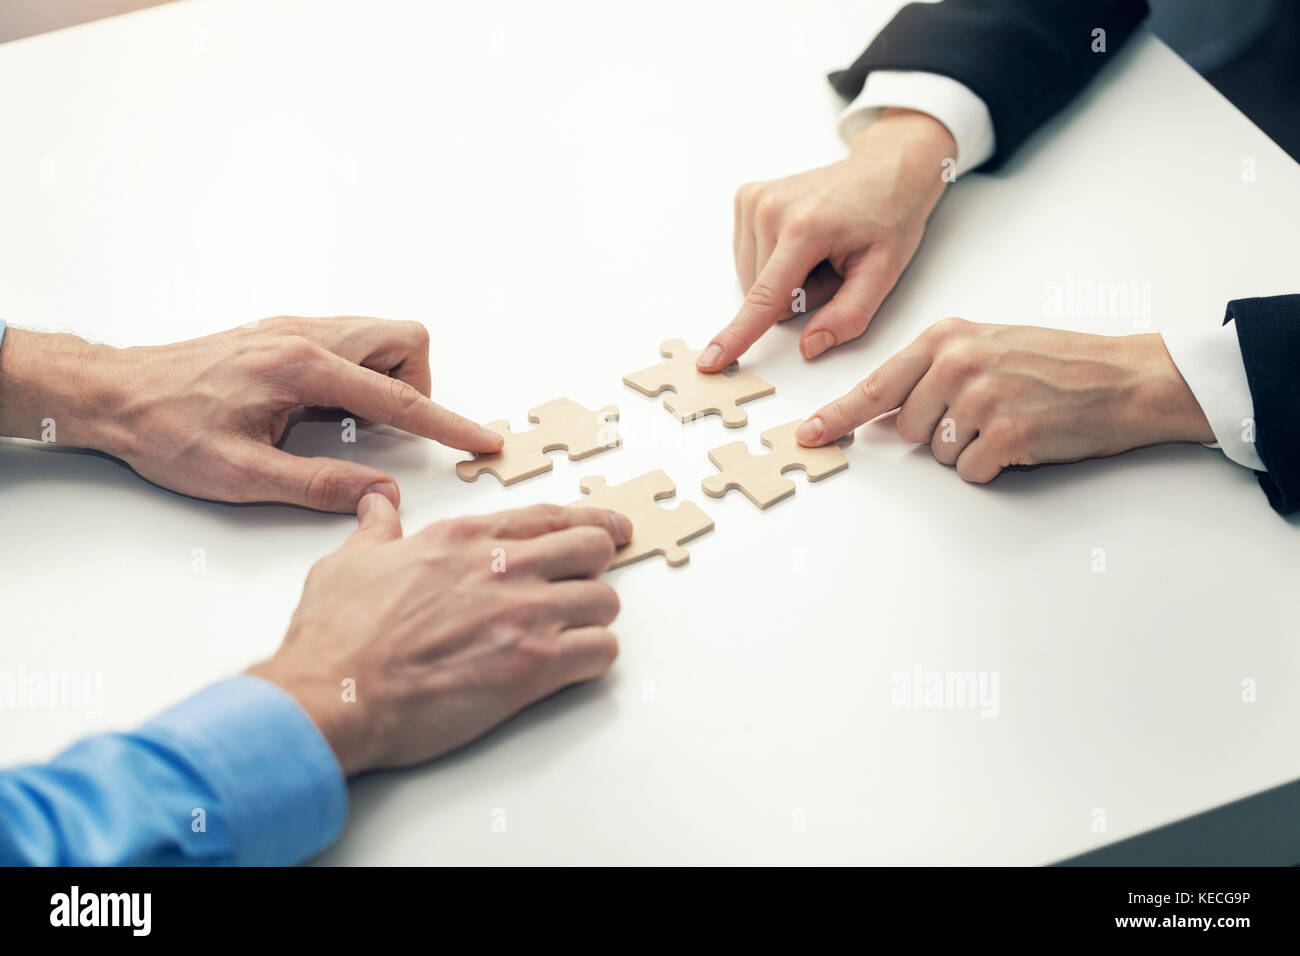 La coopération d'affaires - concept d'affaires sur le branchement des pièces de puzzle Banque D'Images